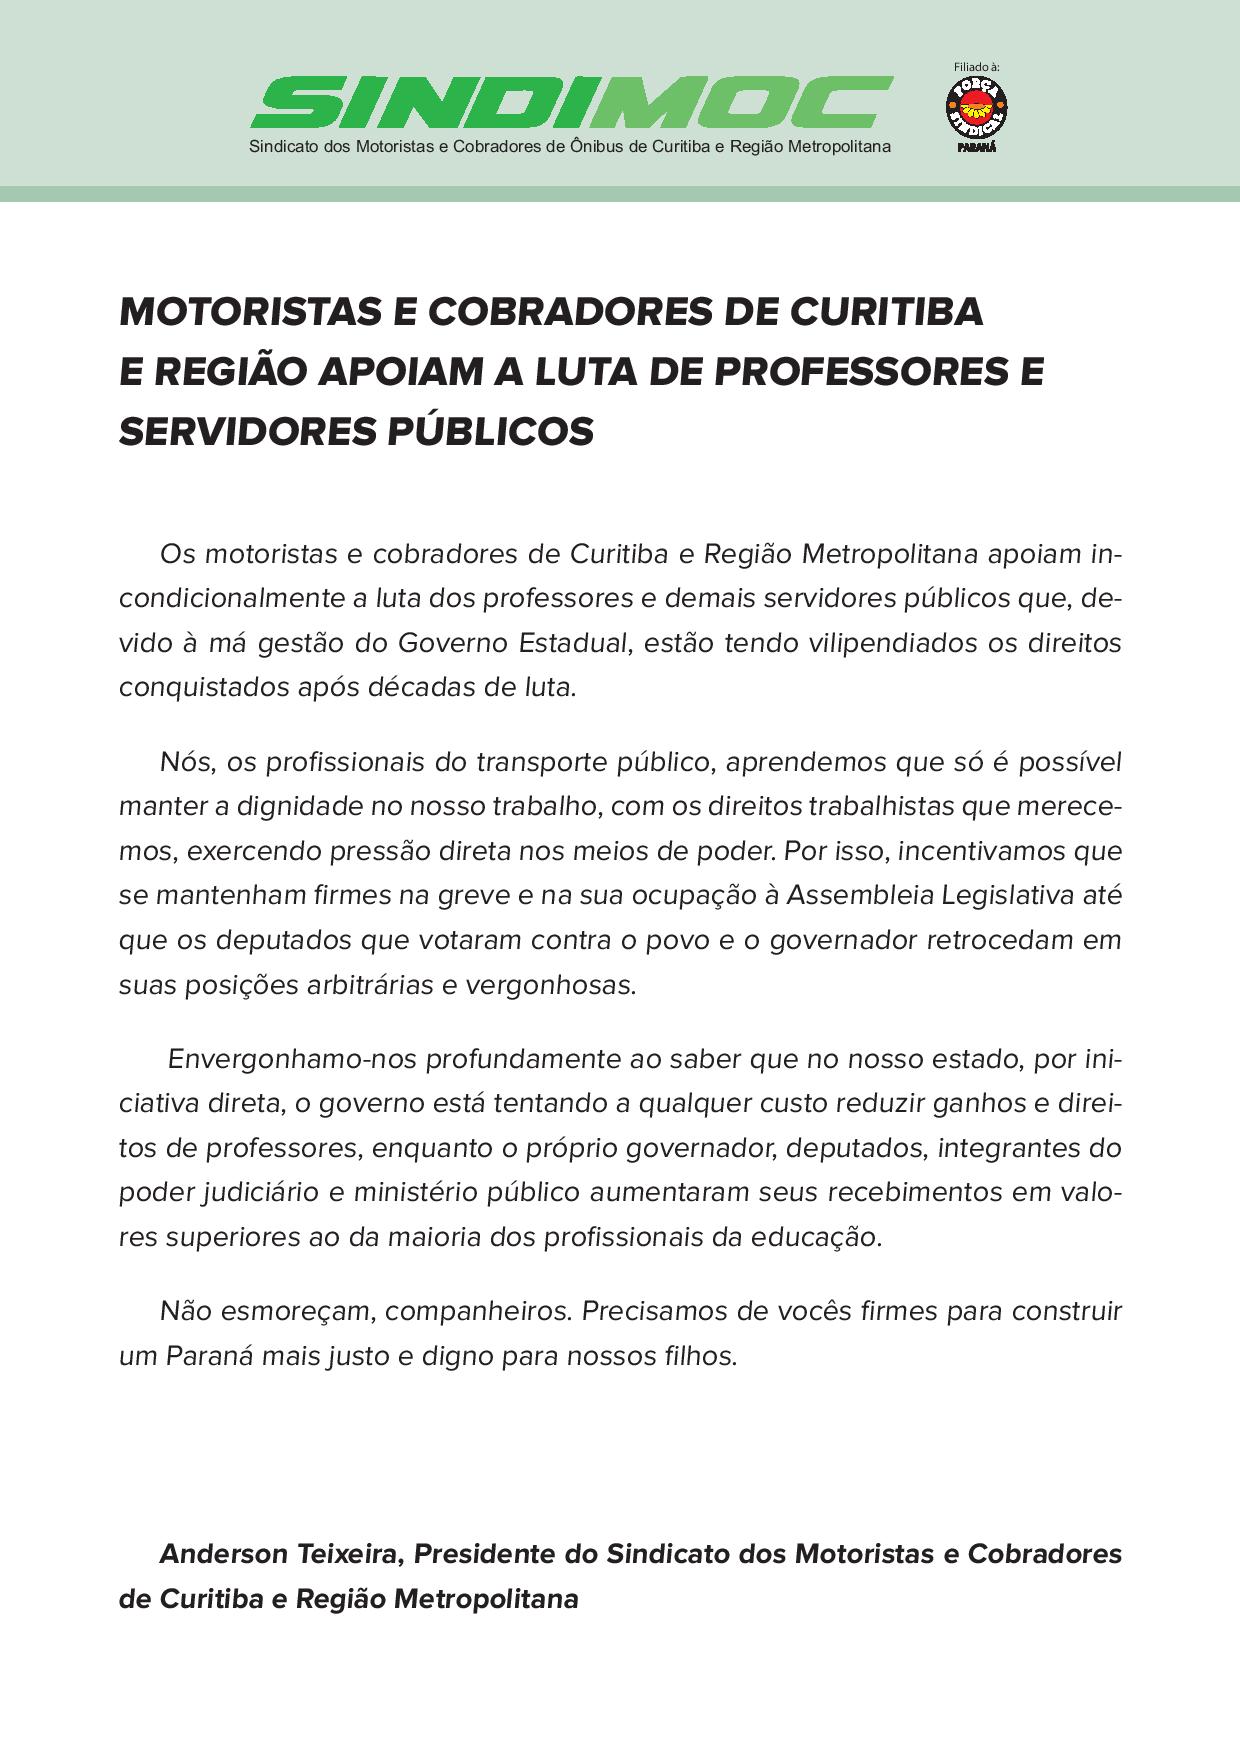 Motoristas e cobradores de Curitiba e região apoiam a luta de professores e servidores públicos